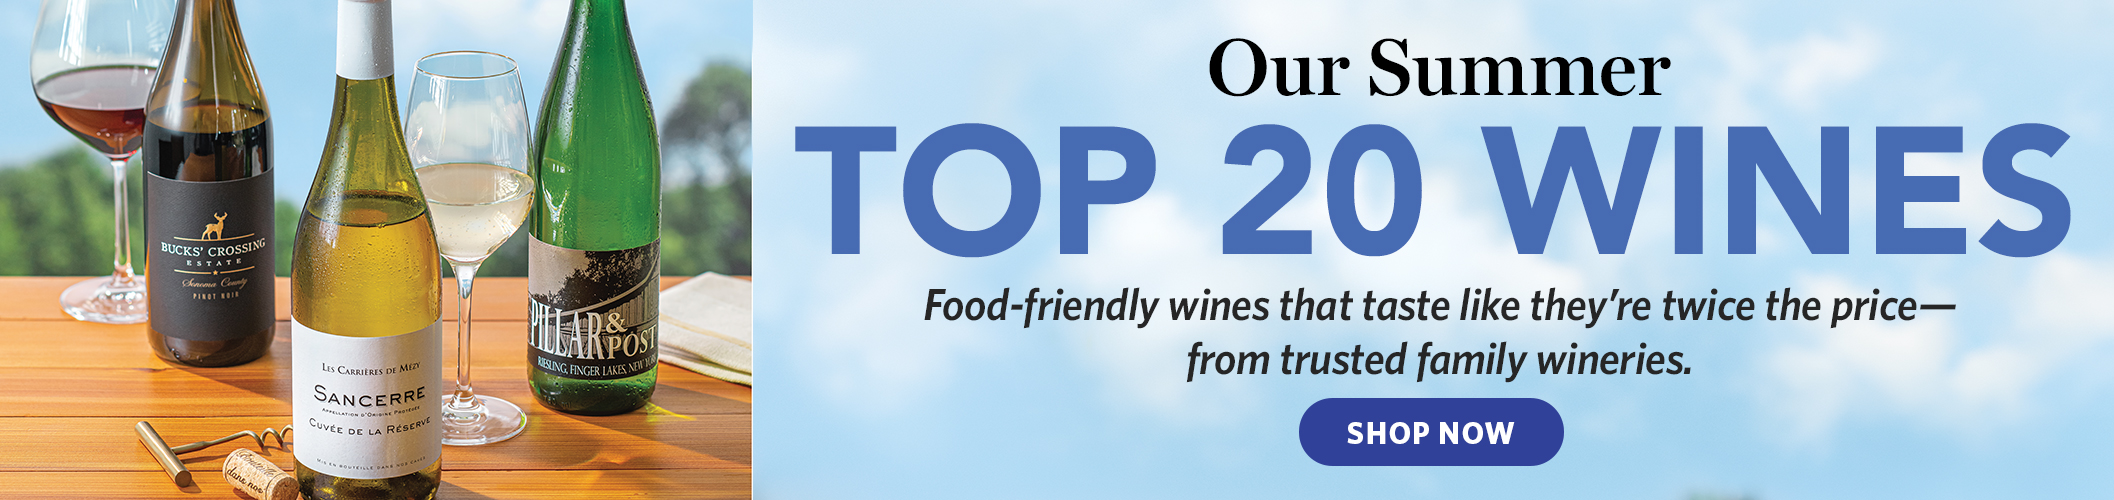 Our summer top twenty wines